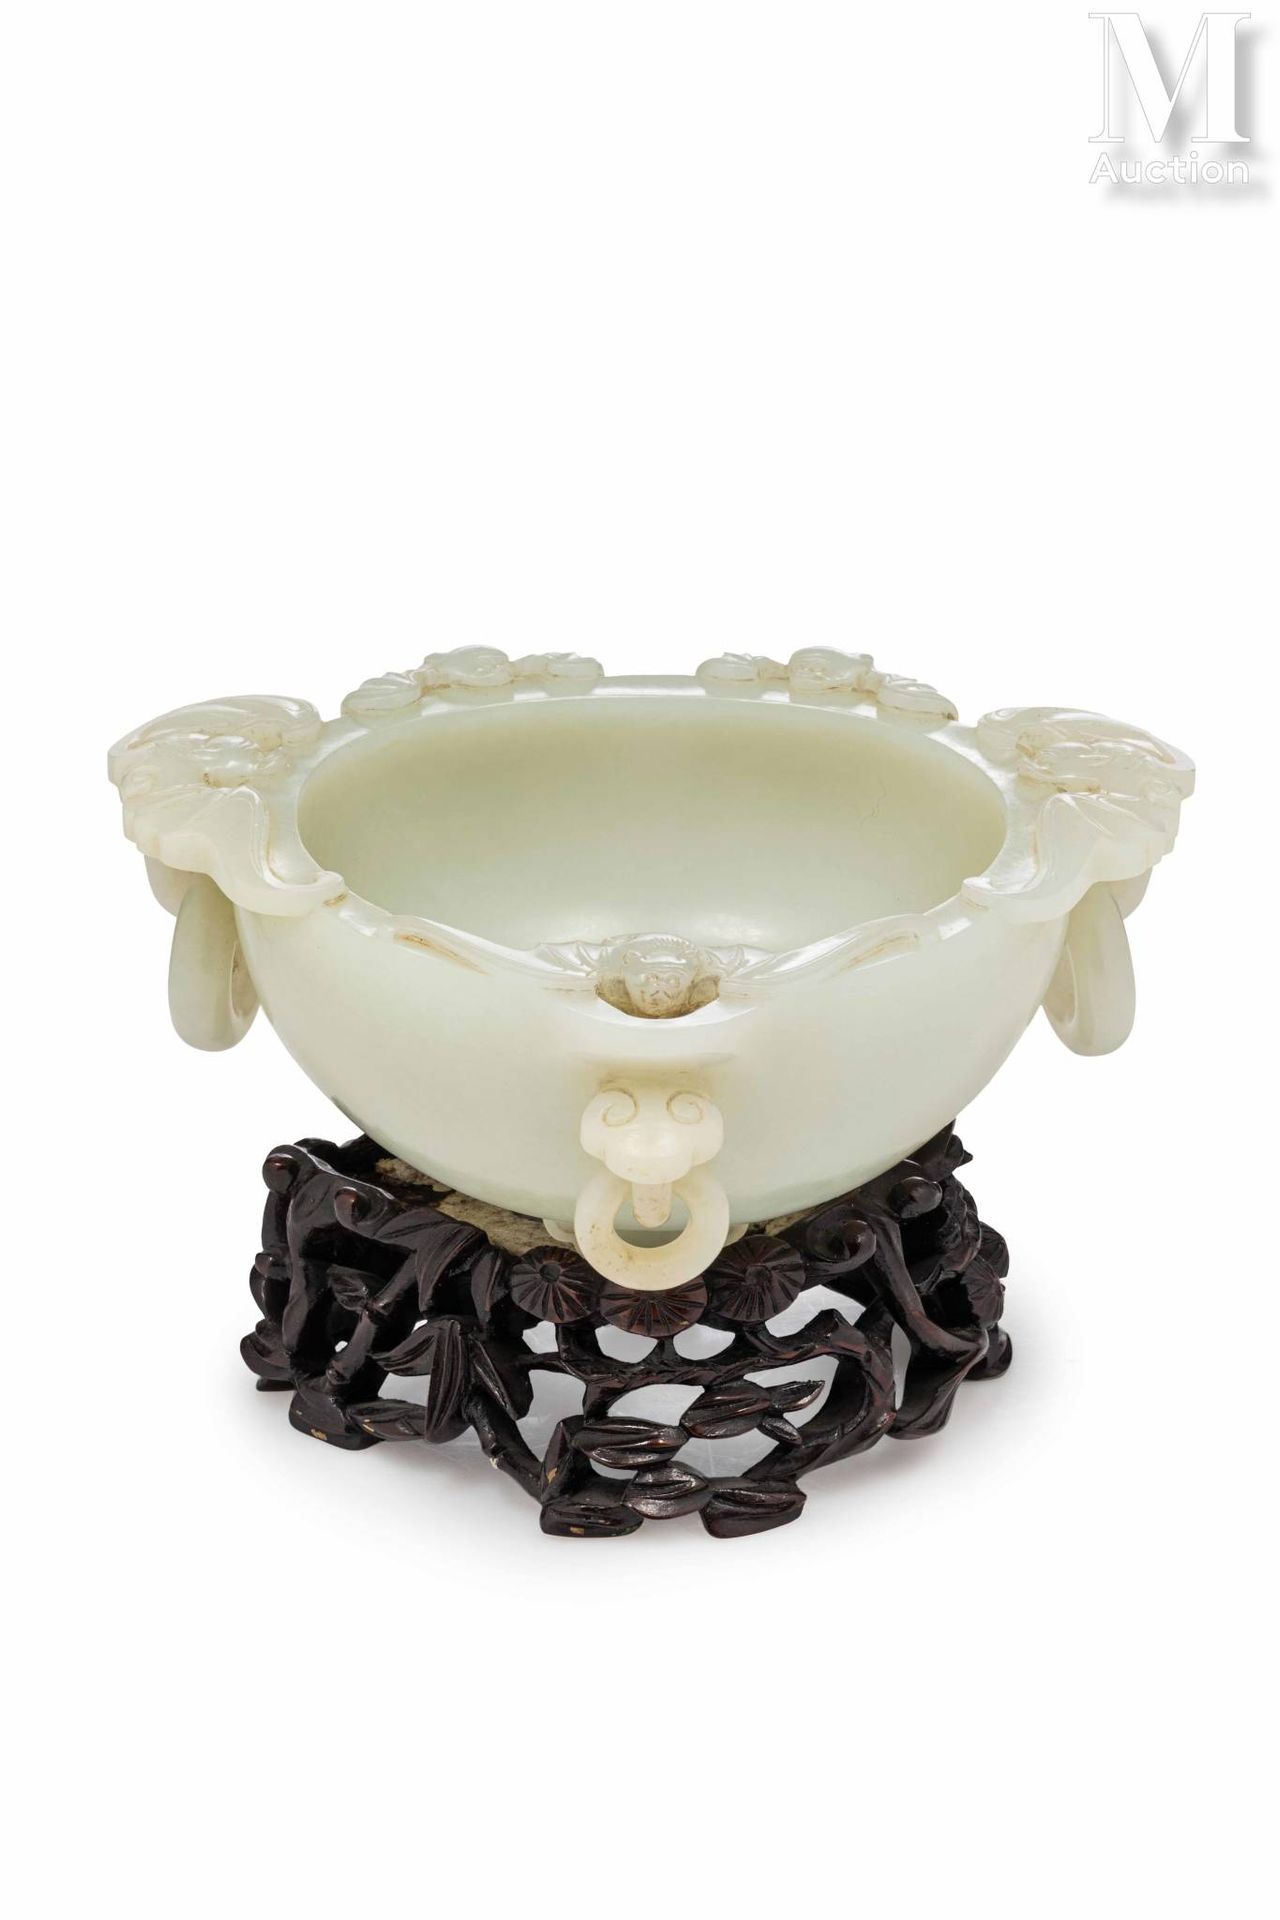 CHINE, Dynastie Qing Elegante taza de jade

La piedra, de color celadón, tiene f&hellip;